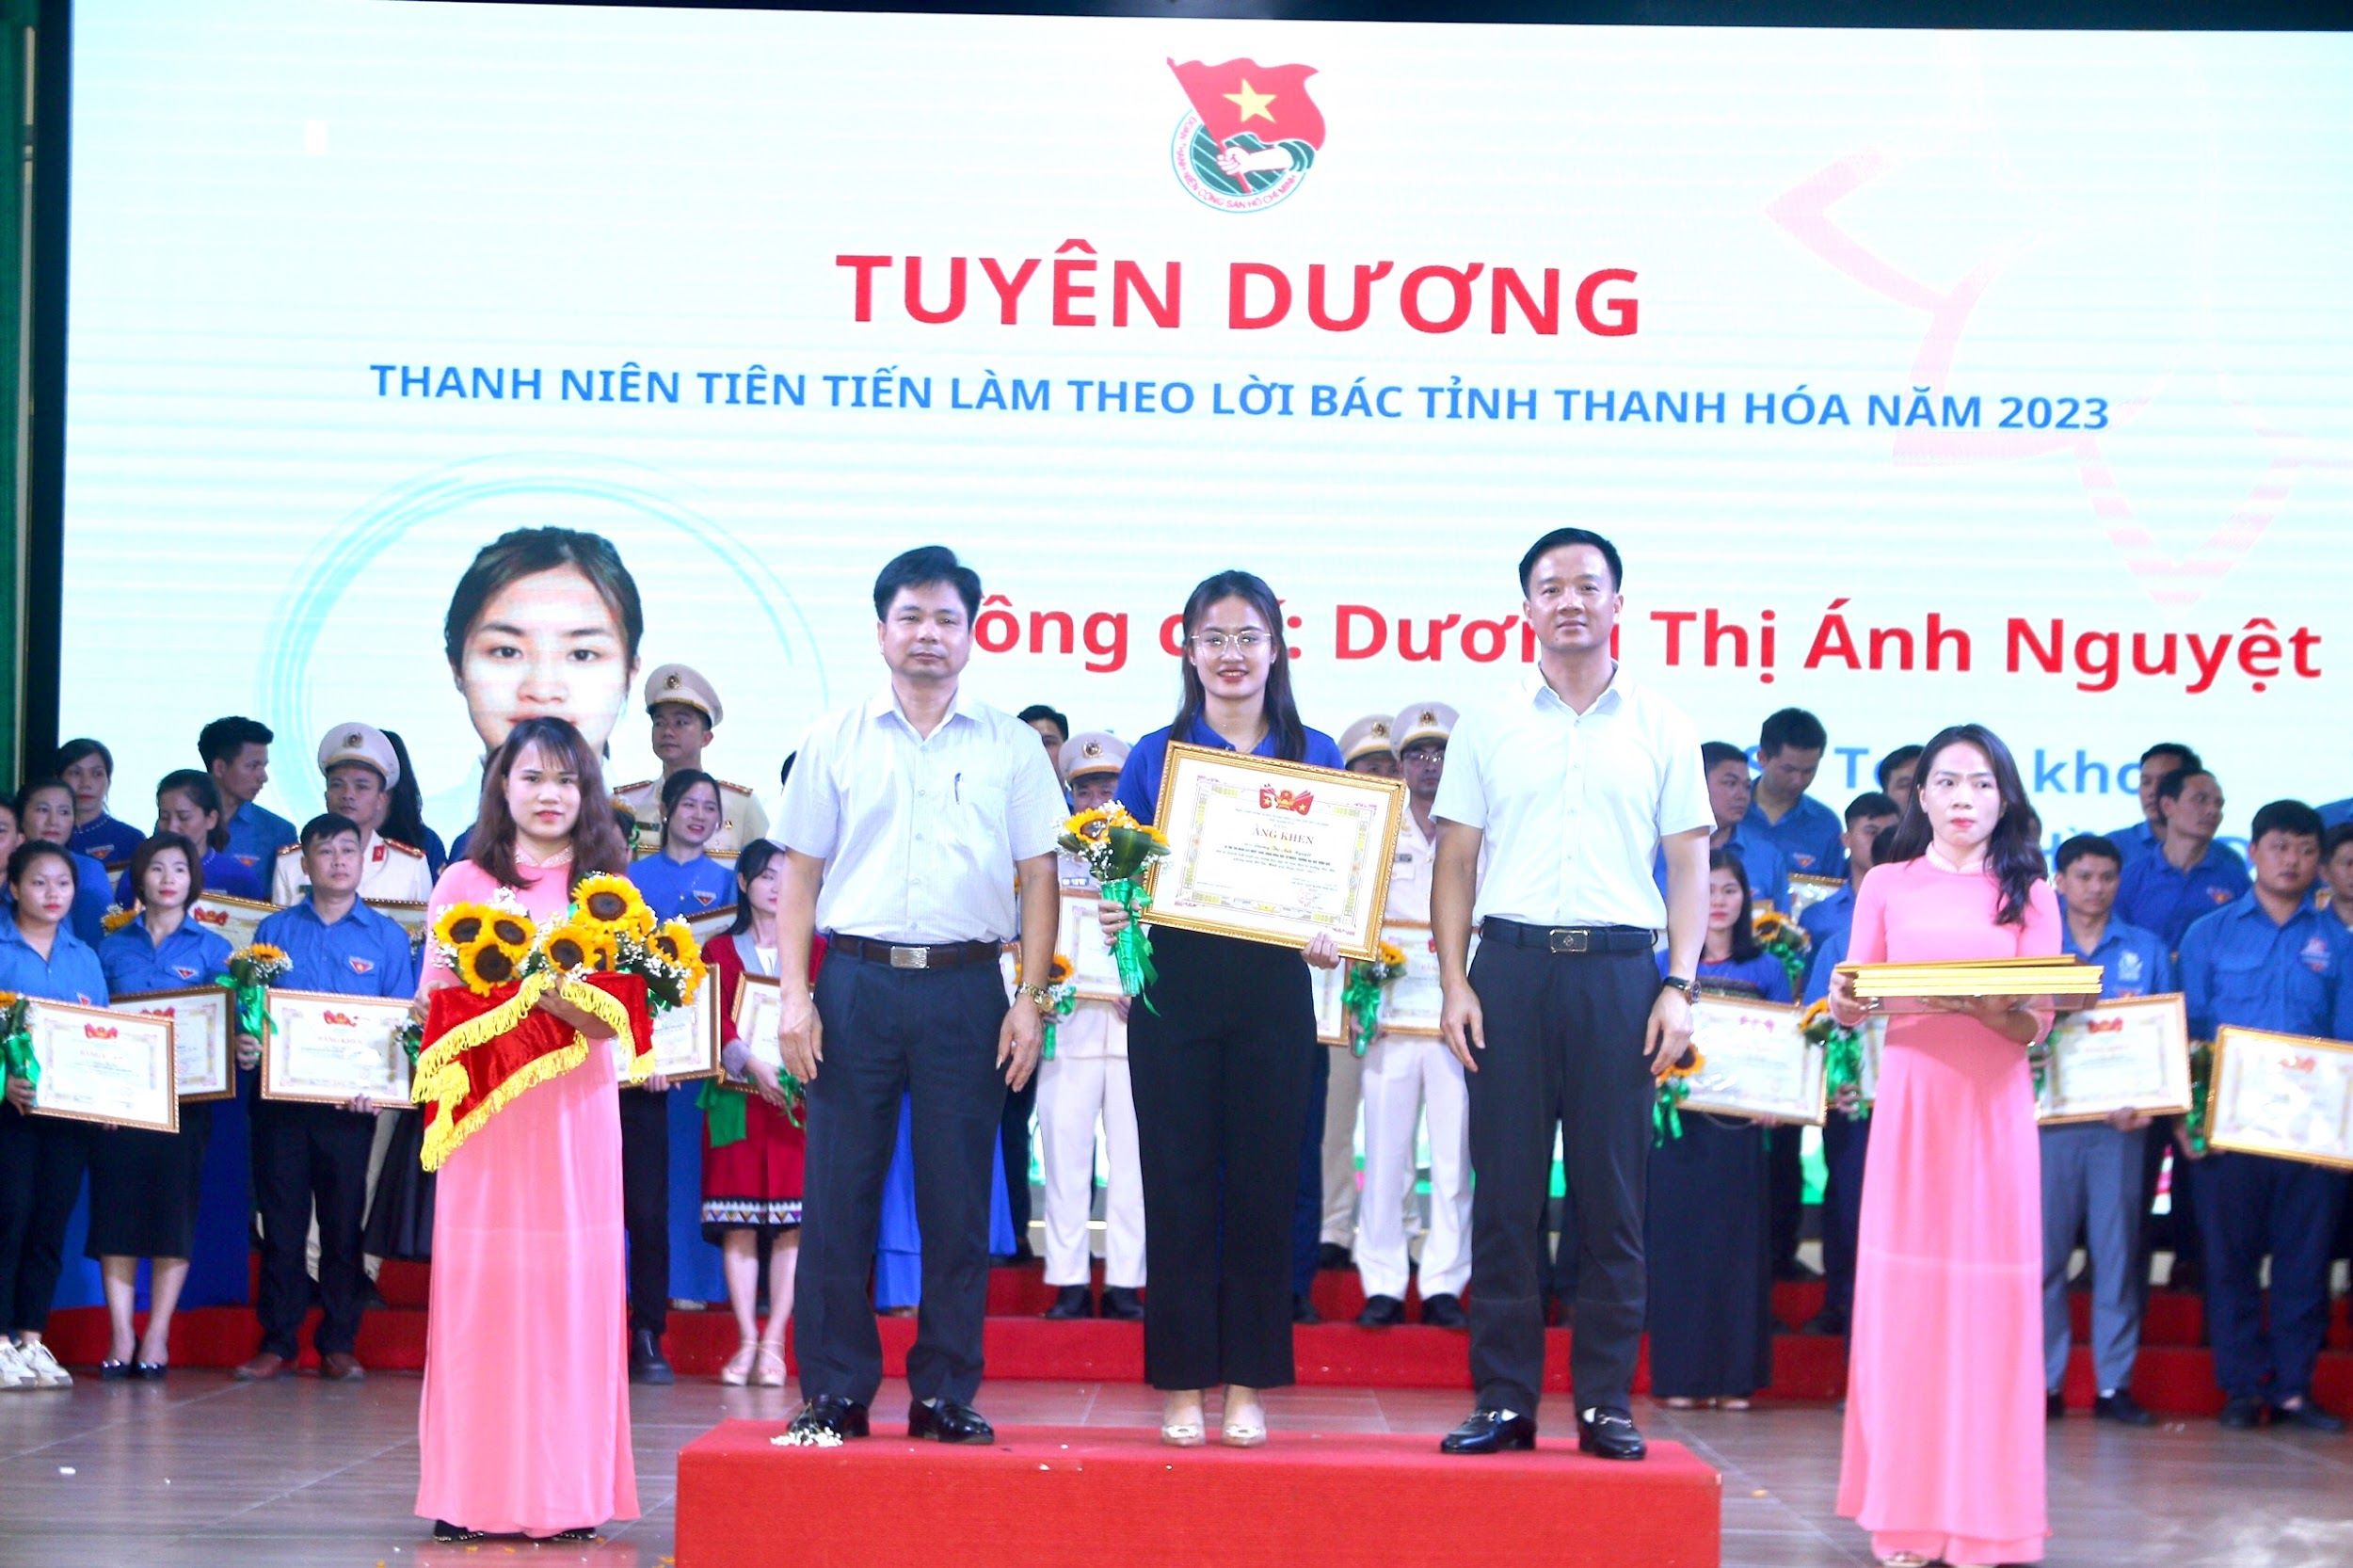 Sinh viên Dương Thị Ánh Nguyệt – K23 Đại học sư phạm Toán đạt danh hiệu thanh niên tiên tiến làm theo lời Bác tỉnh Thanh Hóa năm 2023